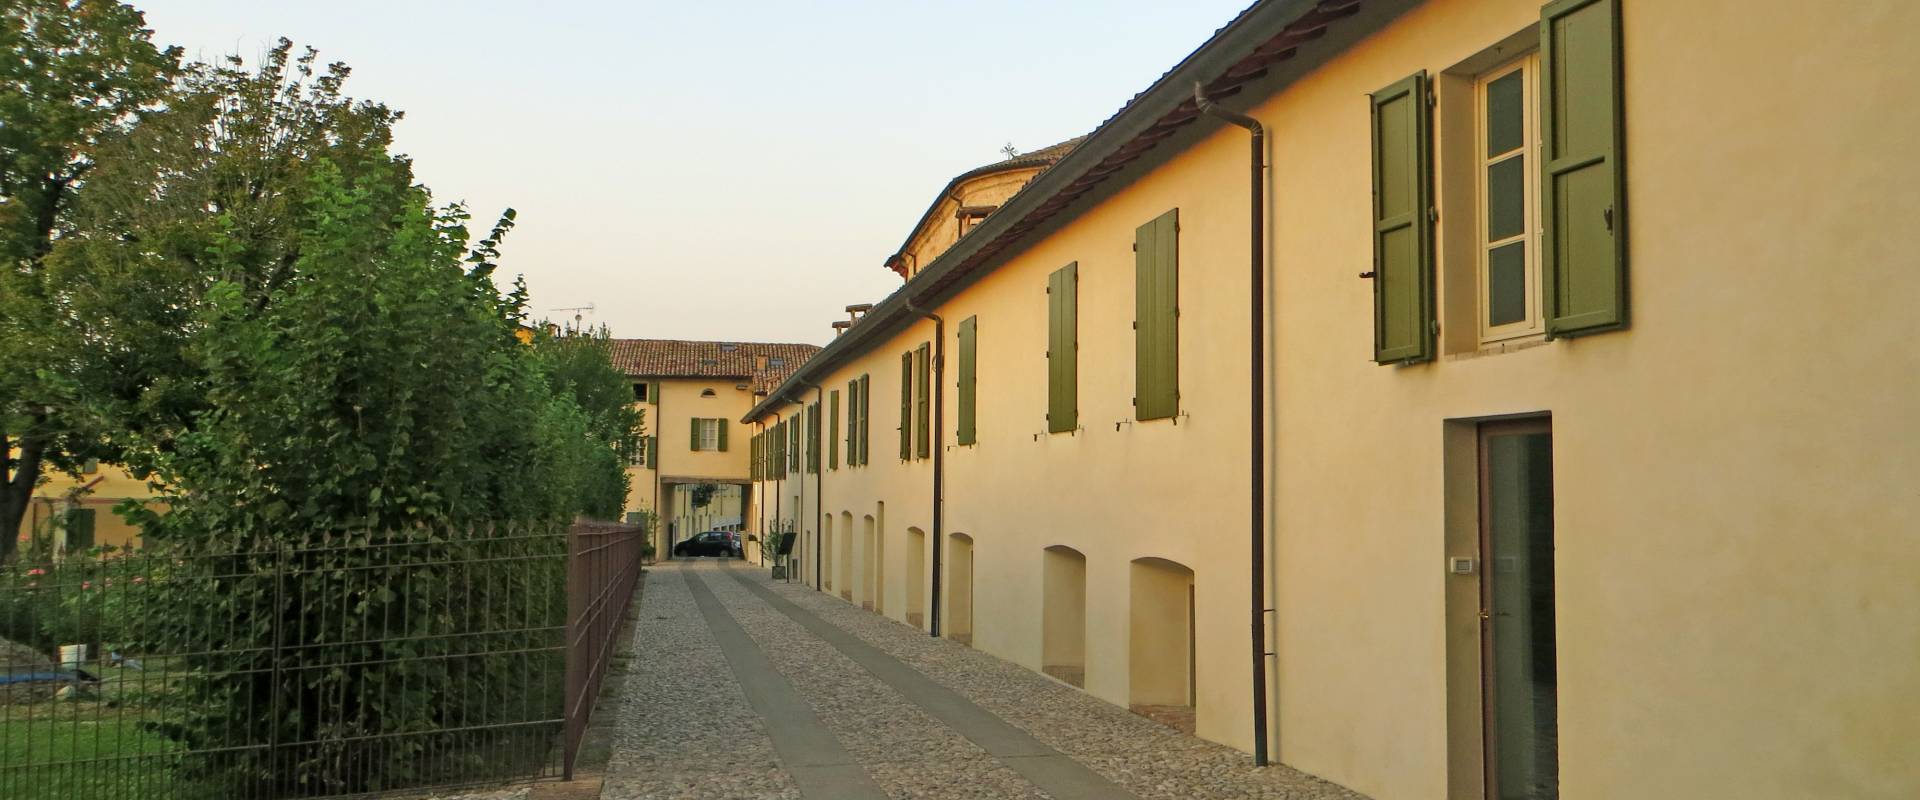 Rocca Sanvitale (Sala Baganza) - lato est della cortaccia Sanvitale 2 2019-09-16 foto di Parma198